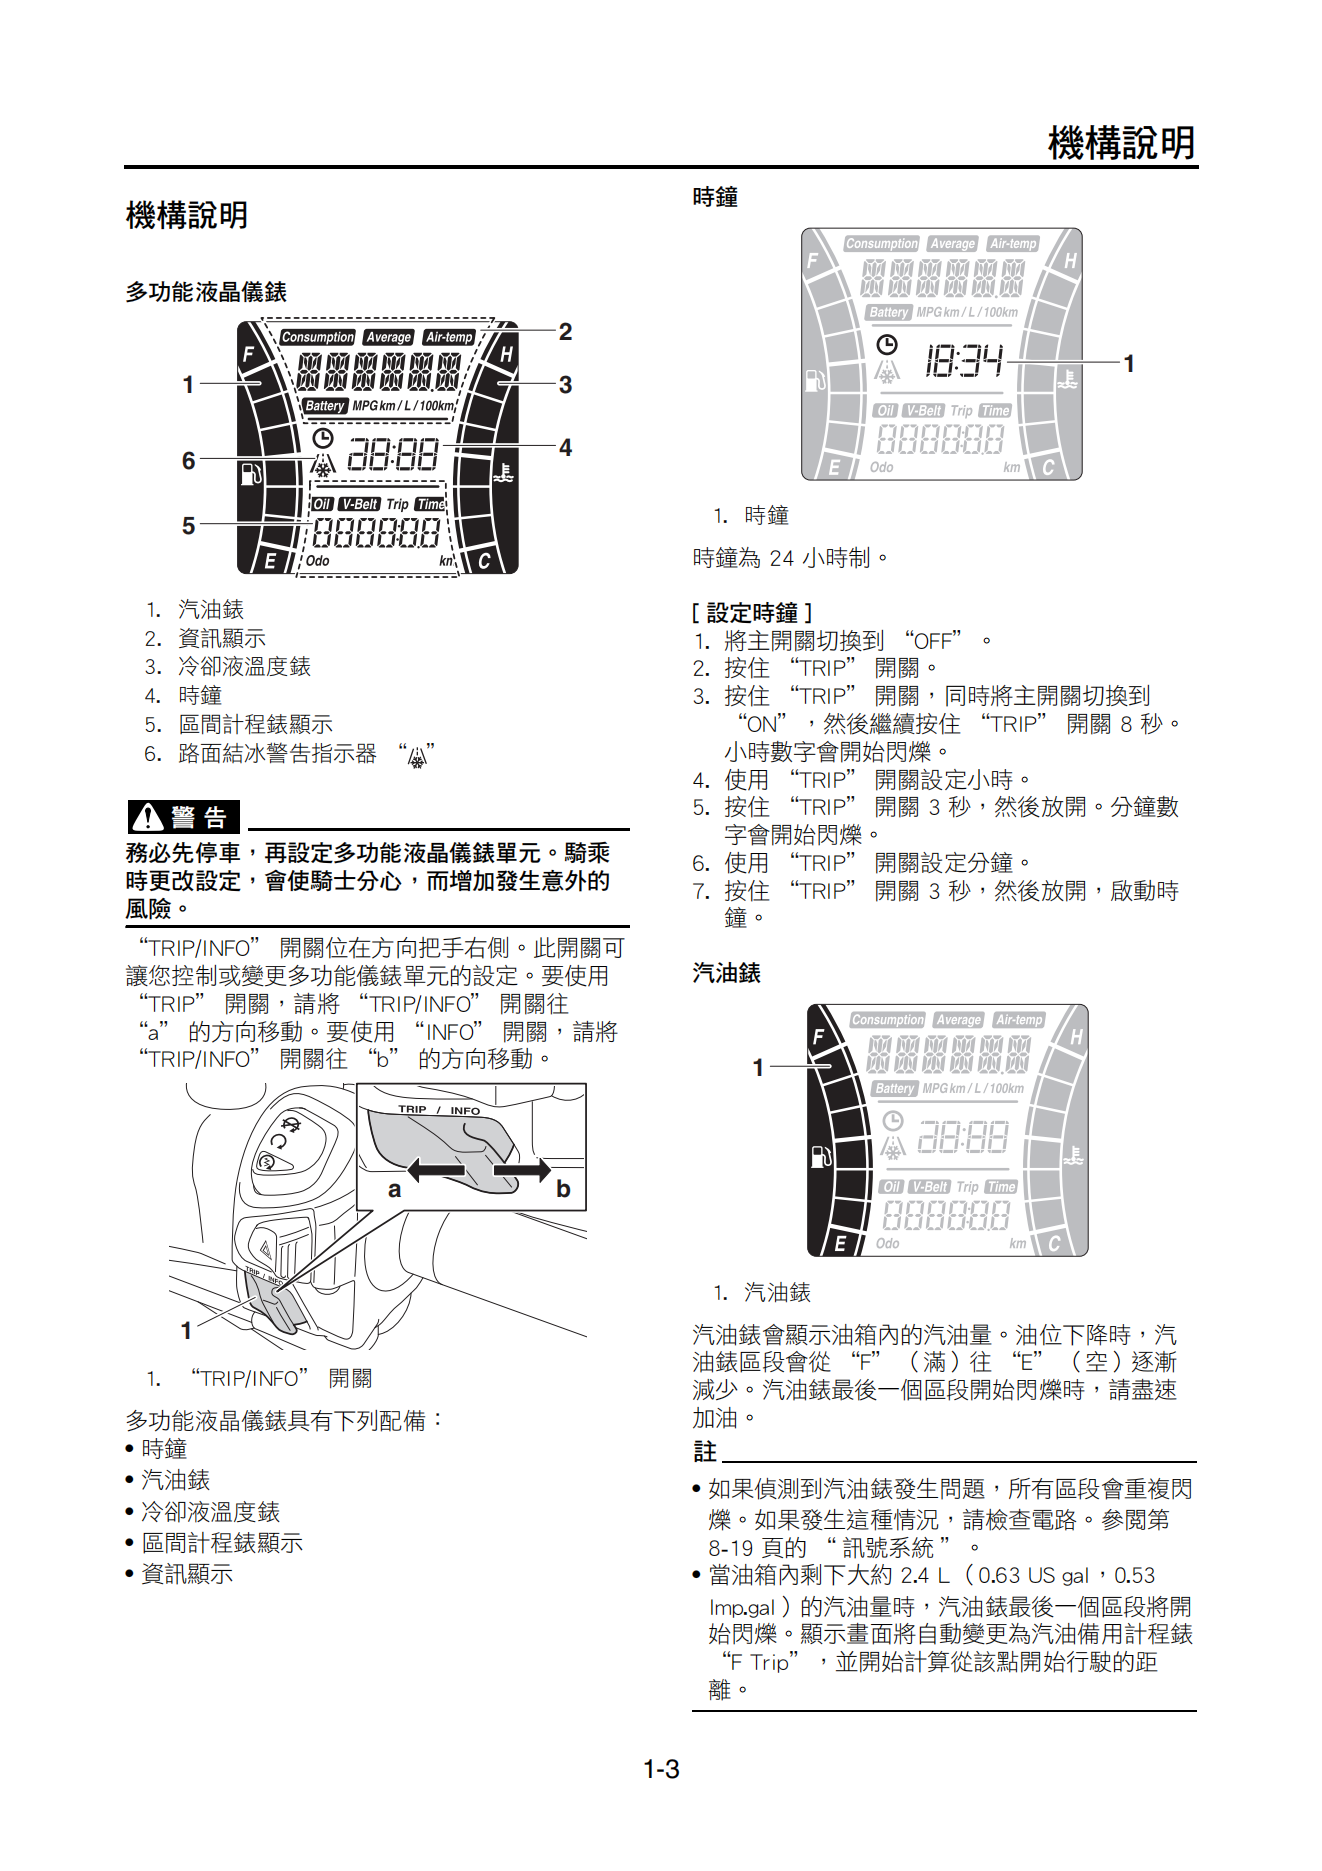 繁体中文2017年雅马哈xmax300维修手册x-max300维修手册插图2